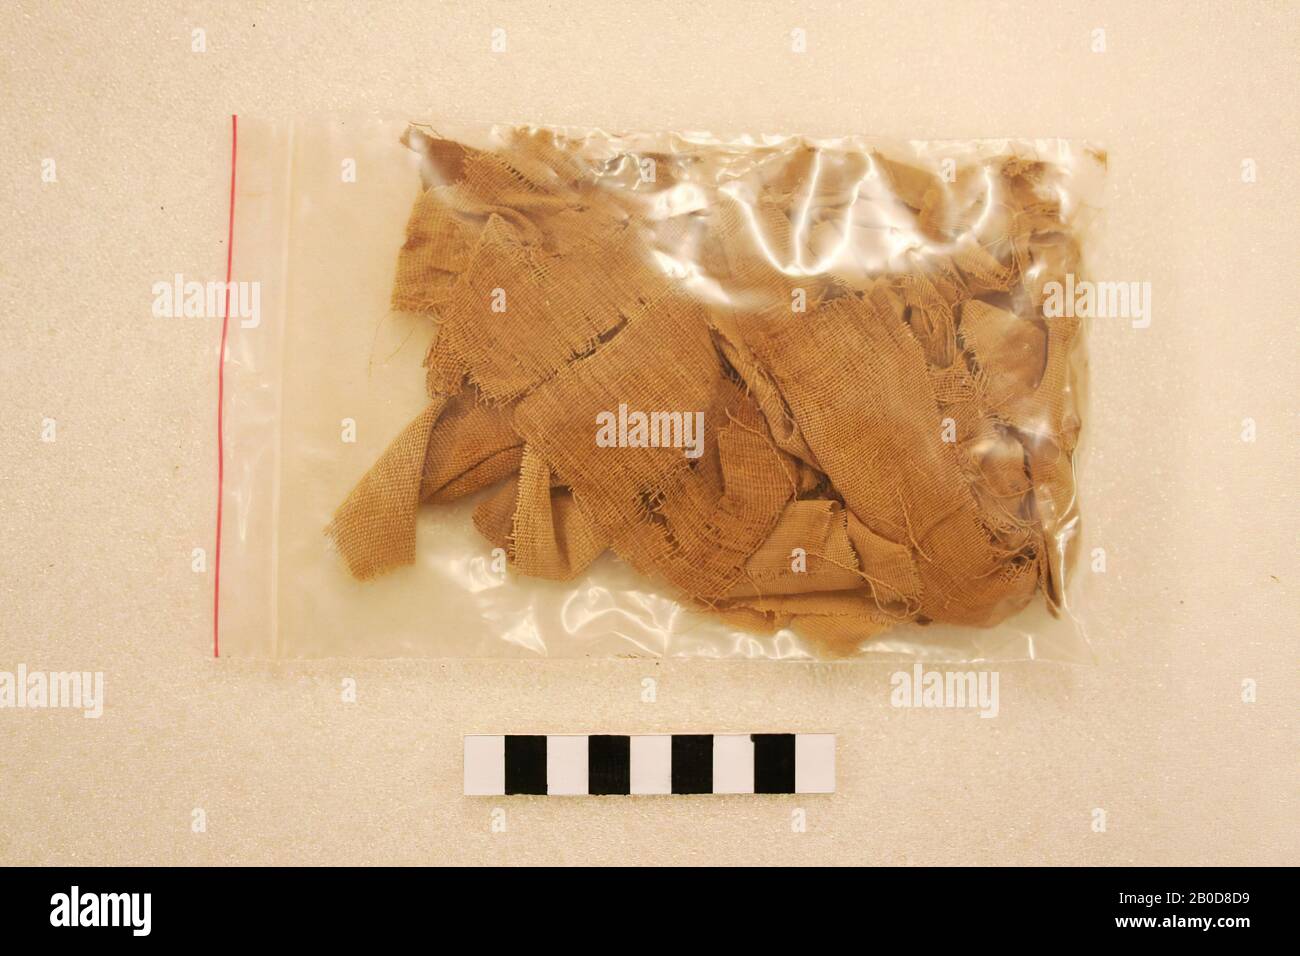 Fragments de wraps de momie., Upholstère, tissu, lin, Egypte Banque D'Images